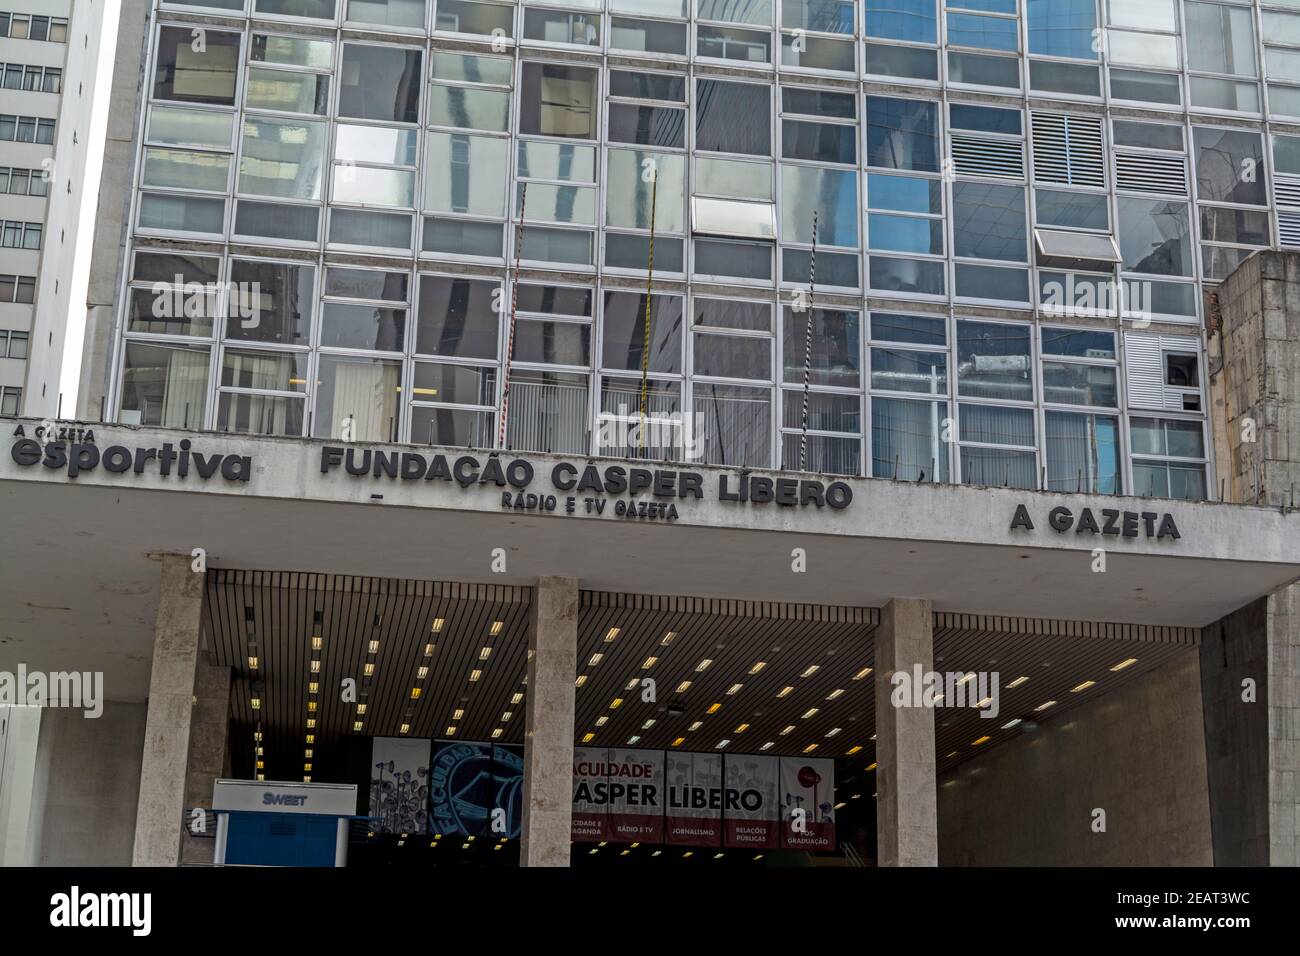 Fundaçao Casper Líbero est un centre de médias brésilien pour TV Rade Gazete et deux stations de radio, Gazeta AM et Gazeta FM. Gazeta FM est le plus popula Banque D'Images